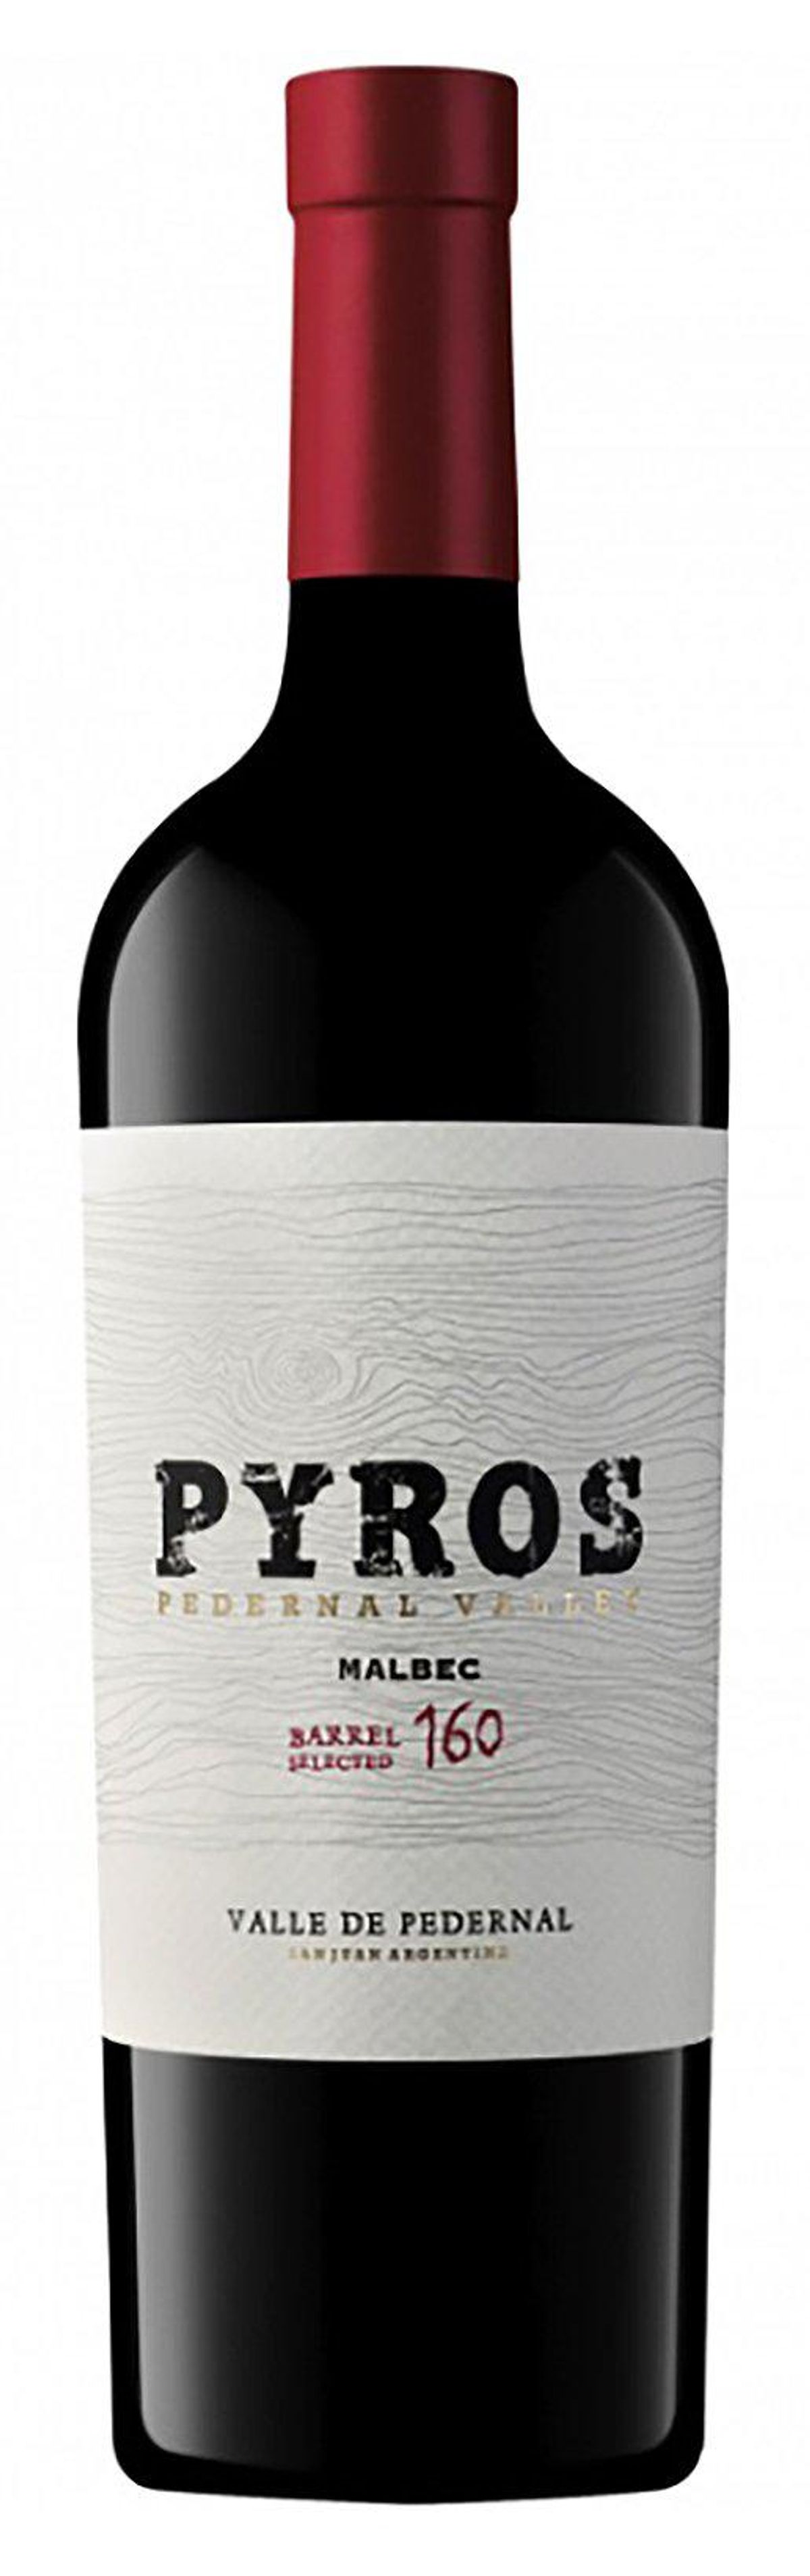 pyros 2015 pyros barrel selected malbec